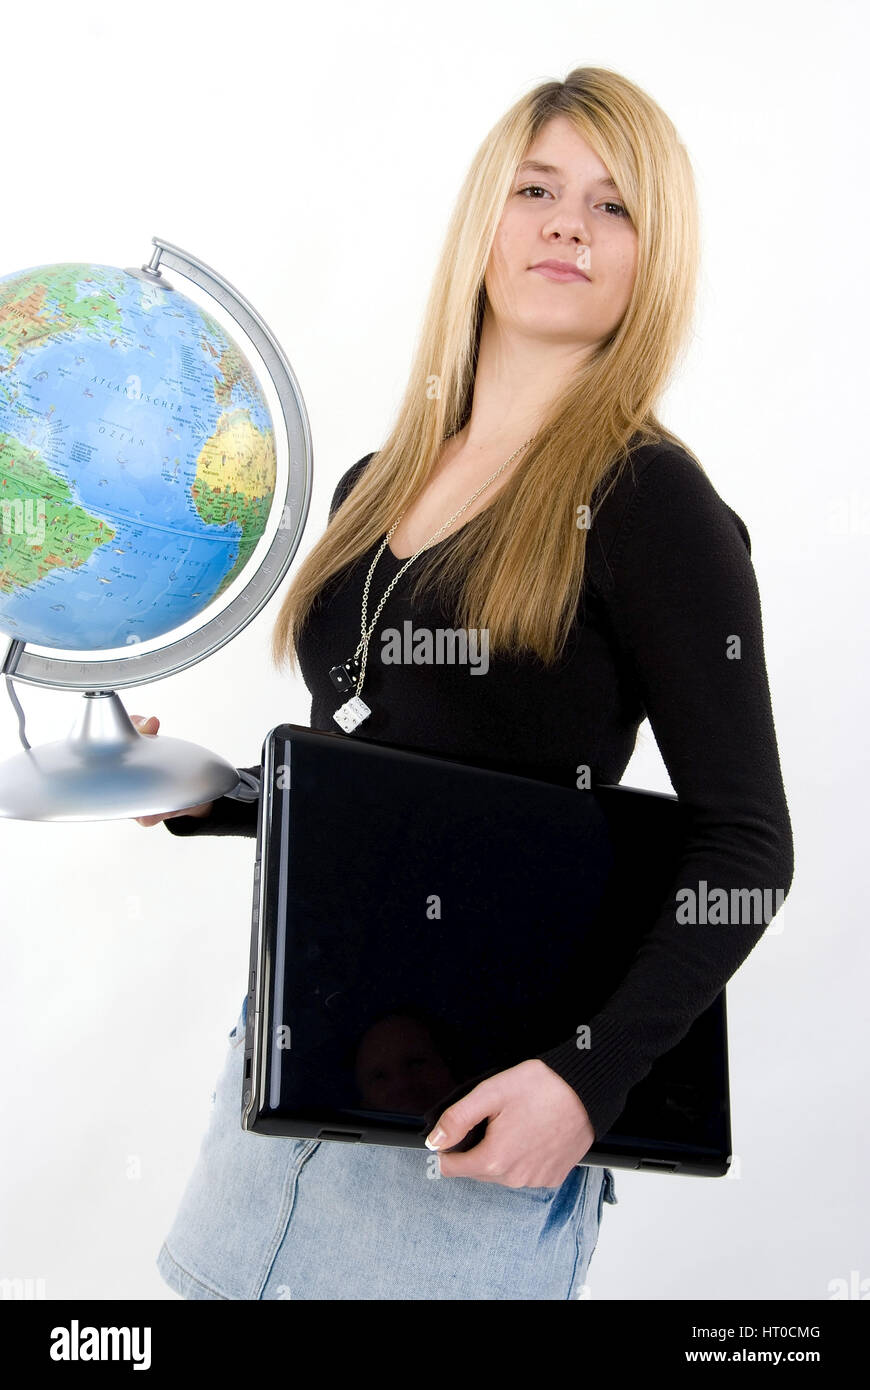 Sch'lerin mit Globus und coffre - fille de l'école avec globe et ordinateur portable Banque D'Images